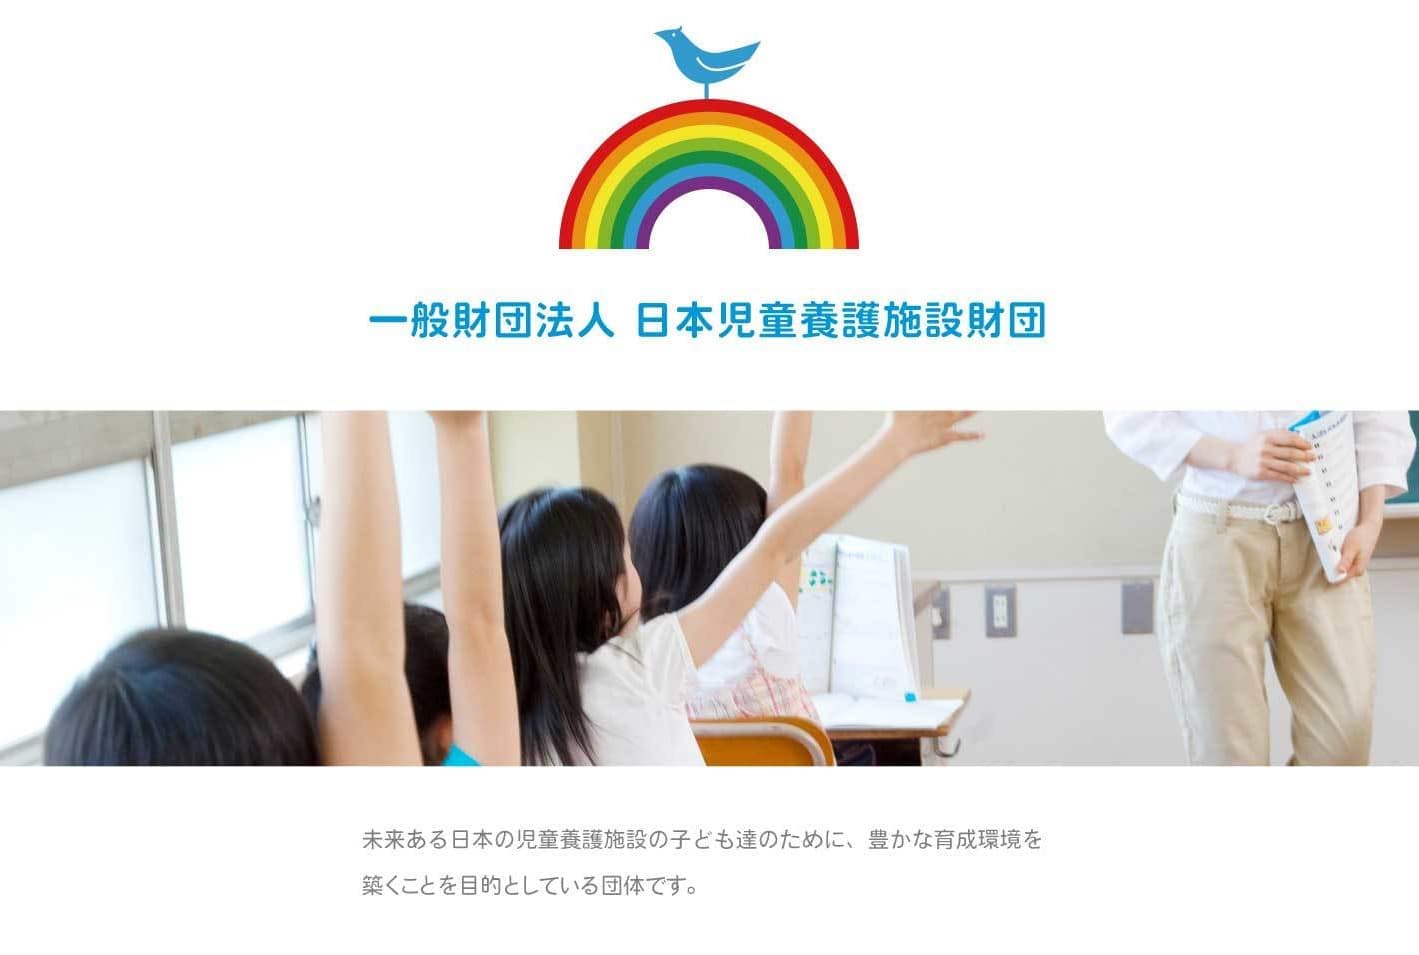 未来ある日本の児童養護施設の子どもたちのために、豊かな育成環境築くことを目的としている団体です。